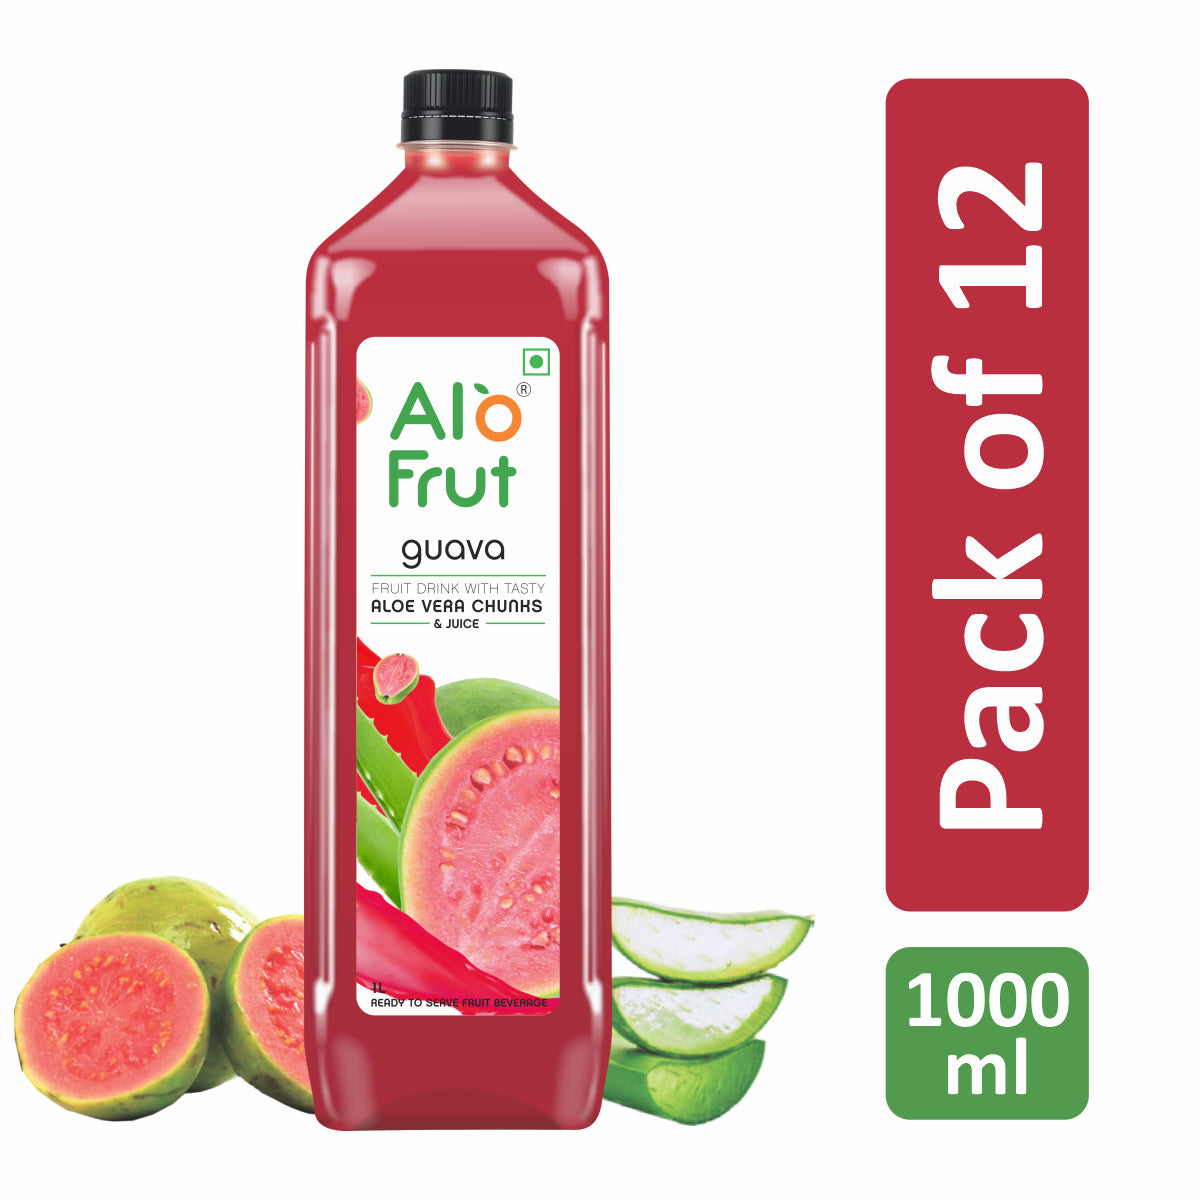 Alo Frut Guava Aloevera Chunks & Juice